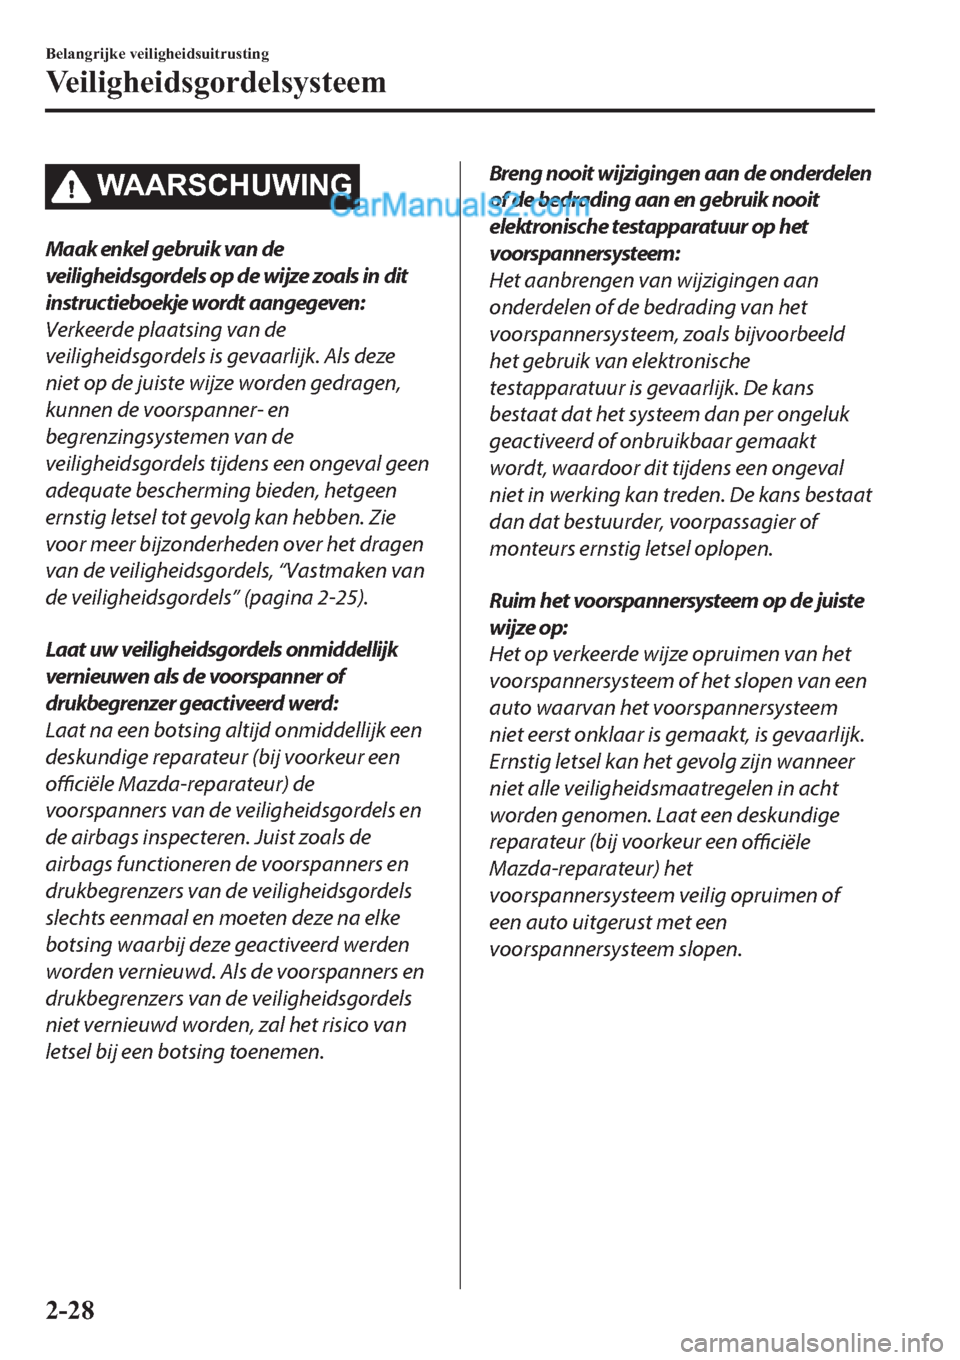 MAZDA MODEL 2 2019  Handleiding (in Dutch) �:�$�$�5�6�&�+�8�:�,�1�*
Maak enkel gebruik van de
veiligheidsgordels op de wijze zoals in dit
instructieboekje wordt aangegeven:
Verkeerde plaatsing van de
veiligheidsgordels is gevaarlijk. Als deze
